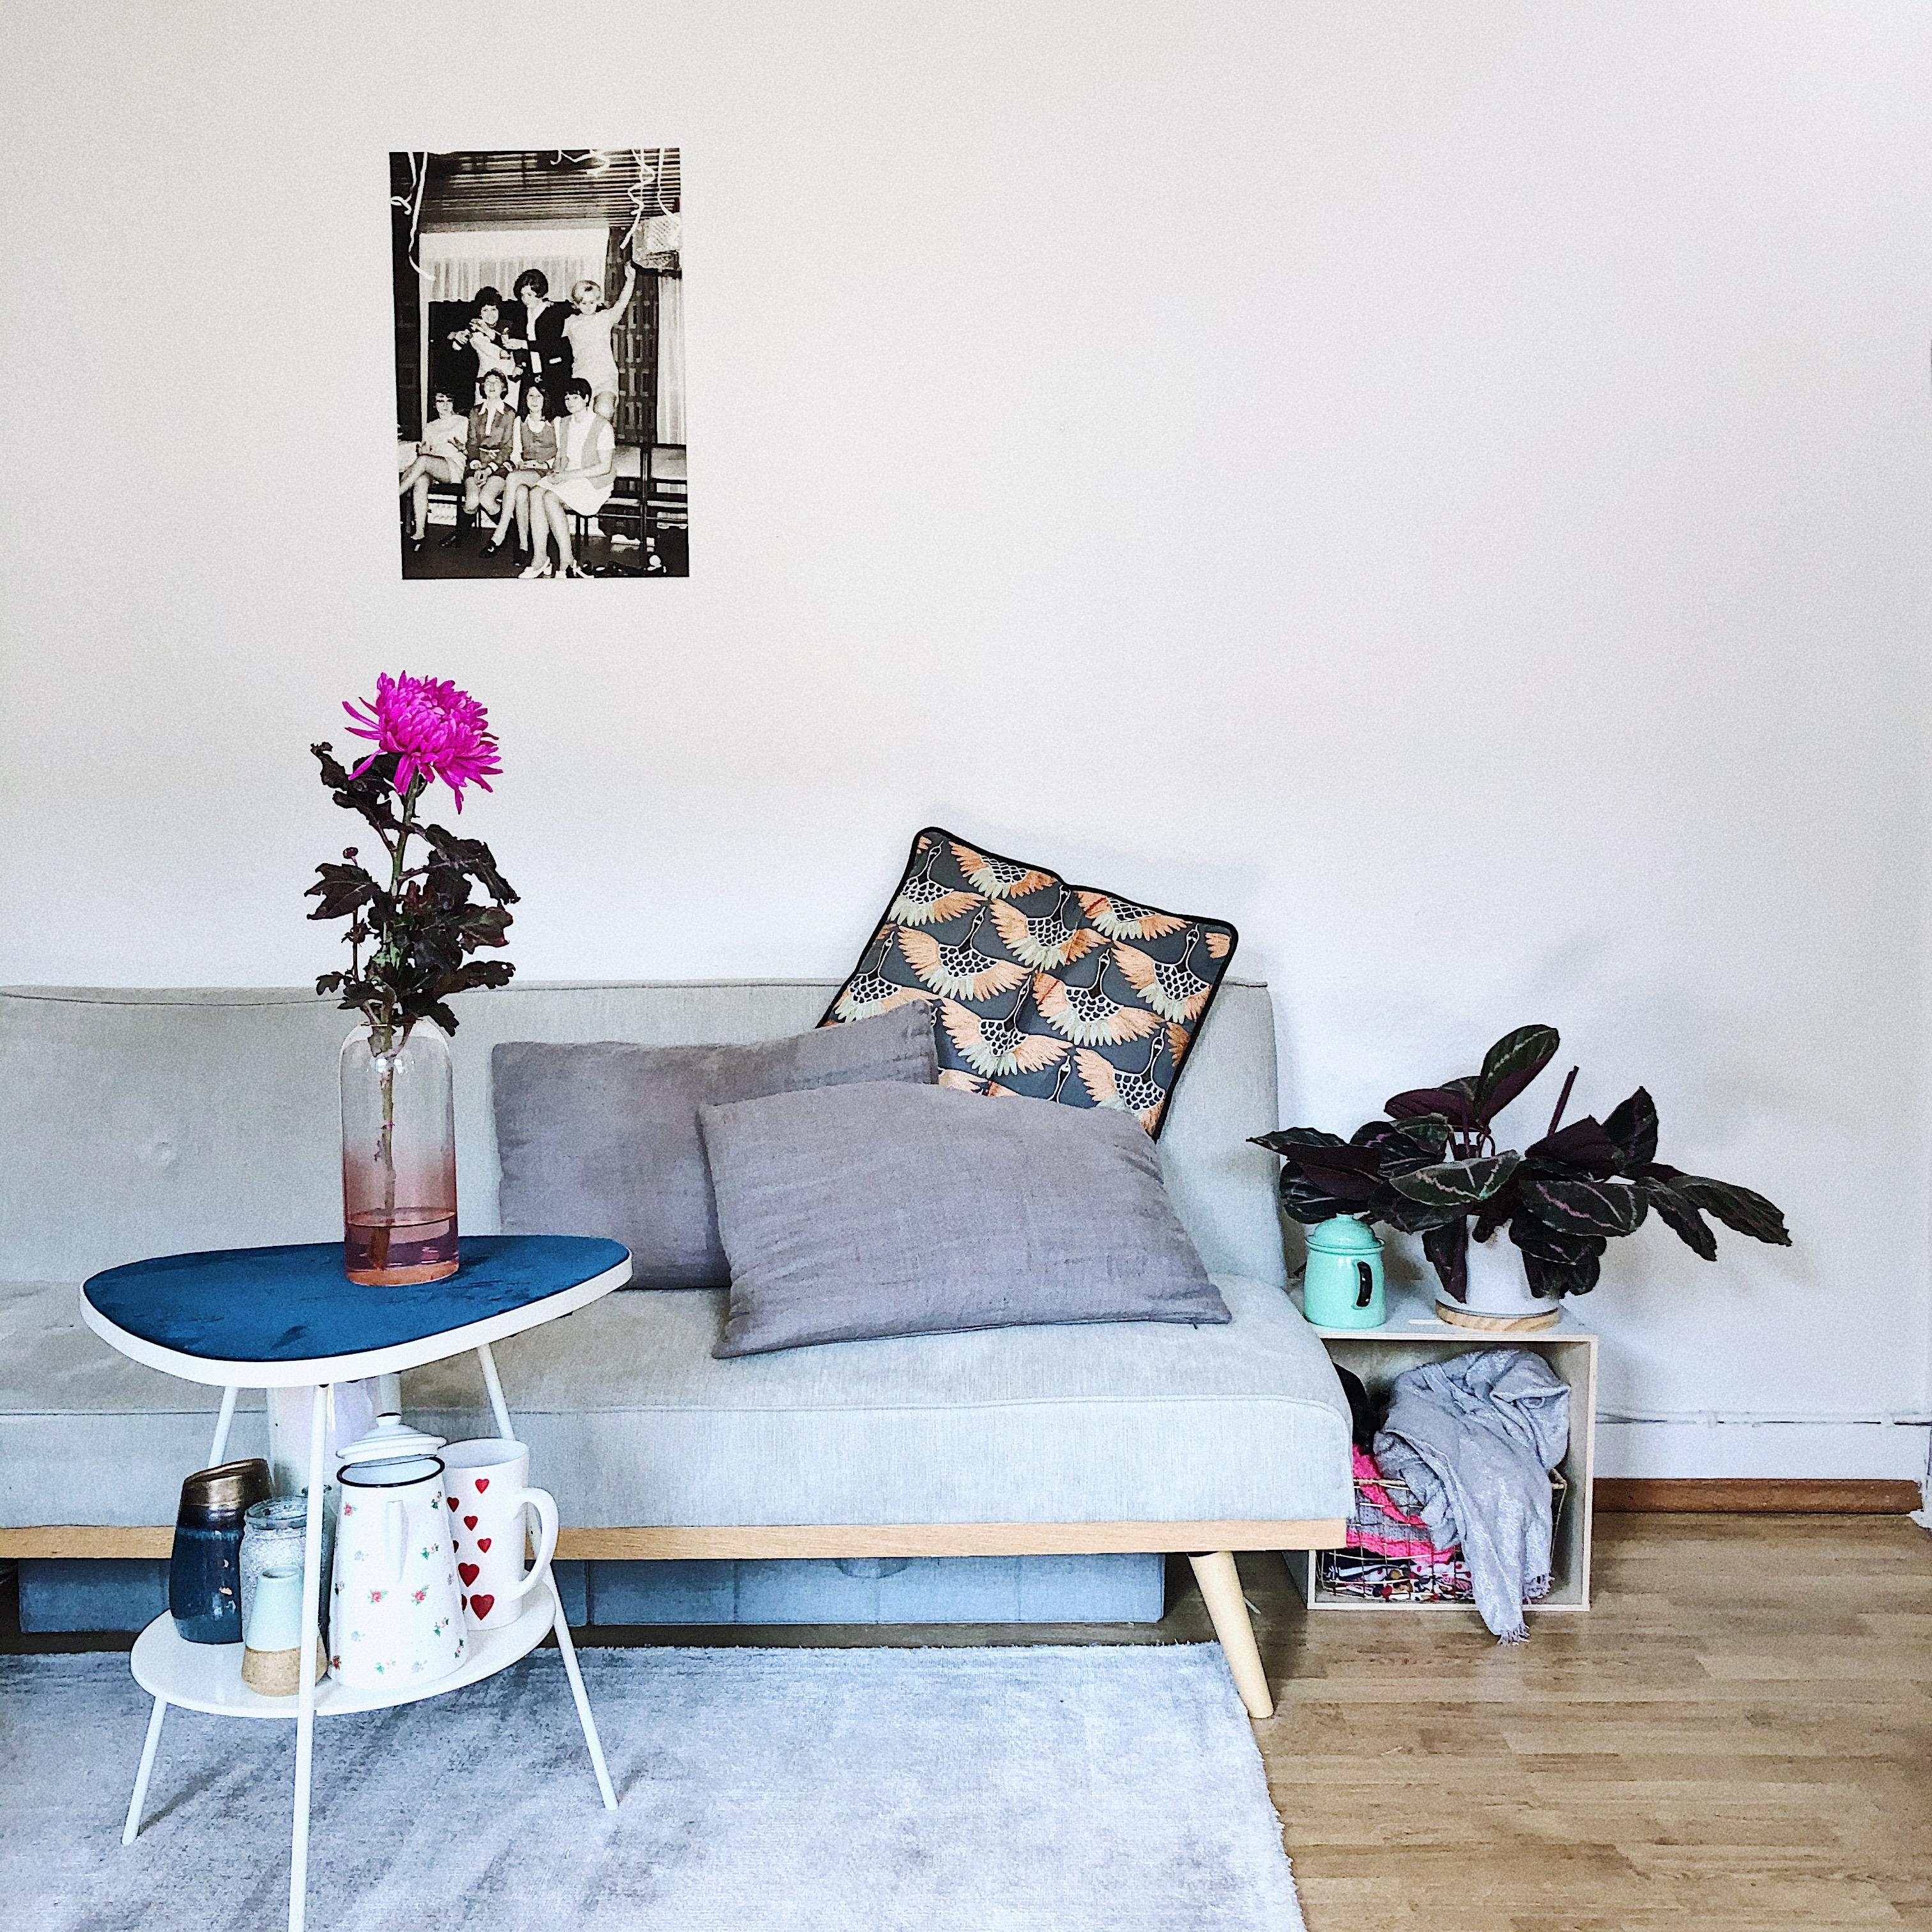 Meist genutzter Platz seit einem Jahr 😅
#wohnzimmer #couch #skandi